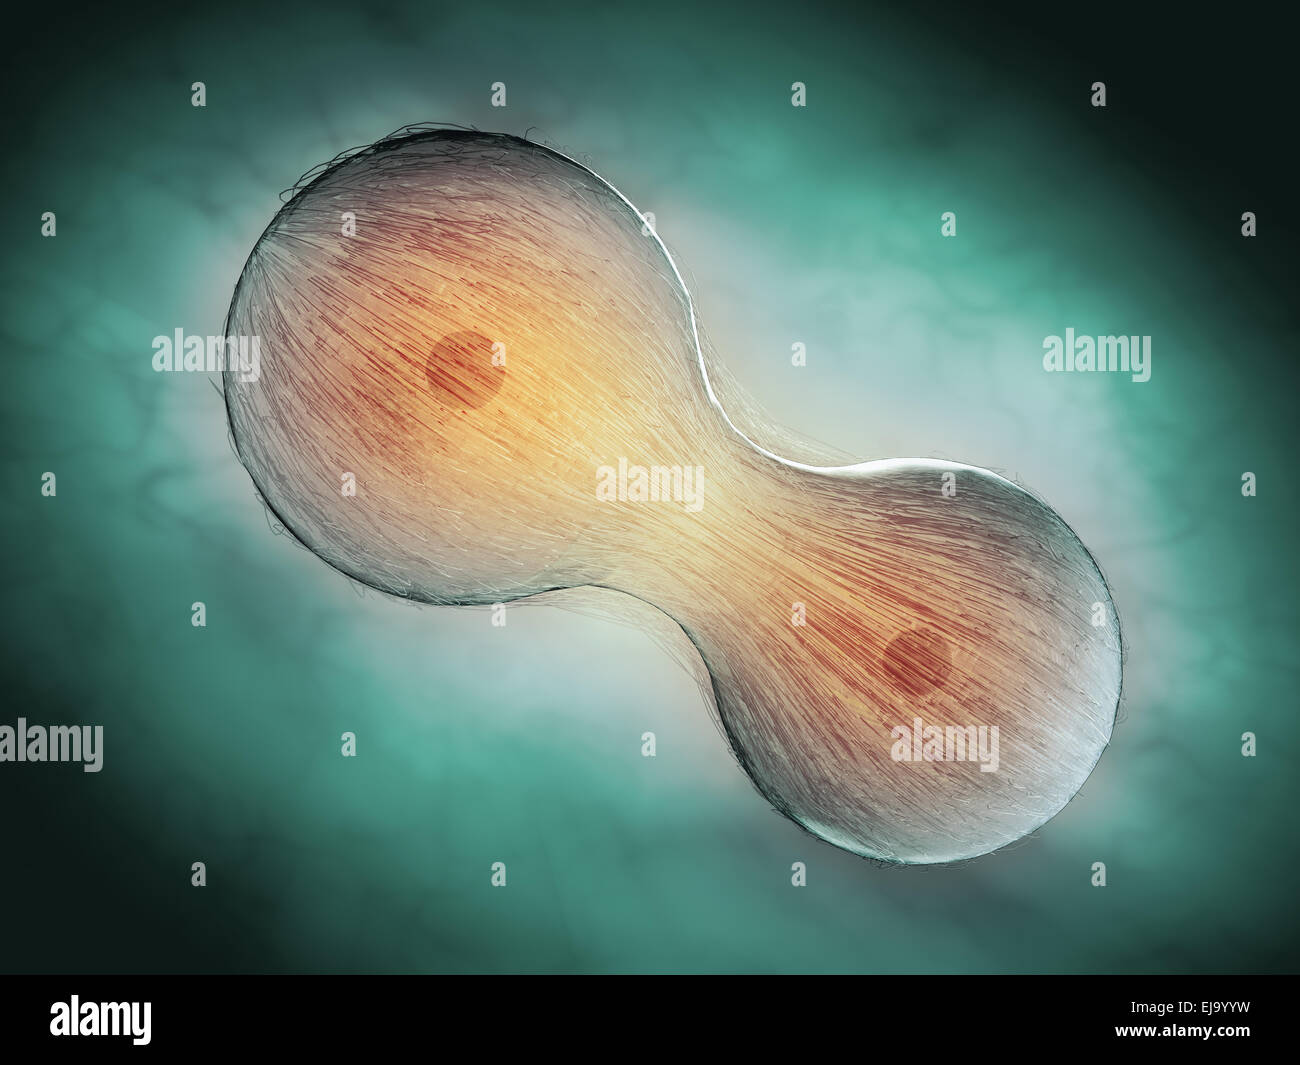 La division cellulaire par mitose - illustration scientifique Banque D'Images